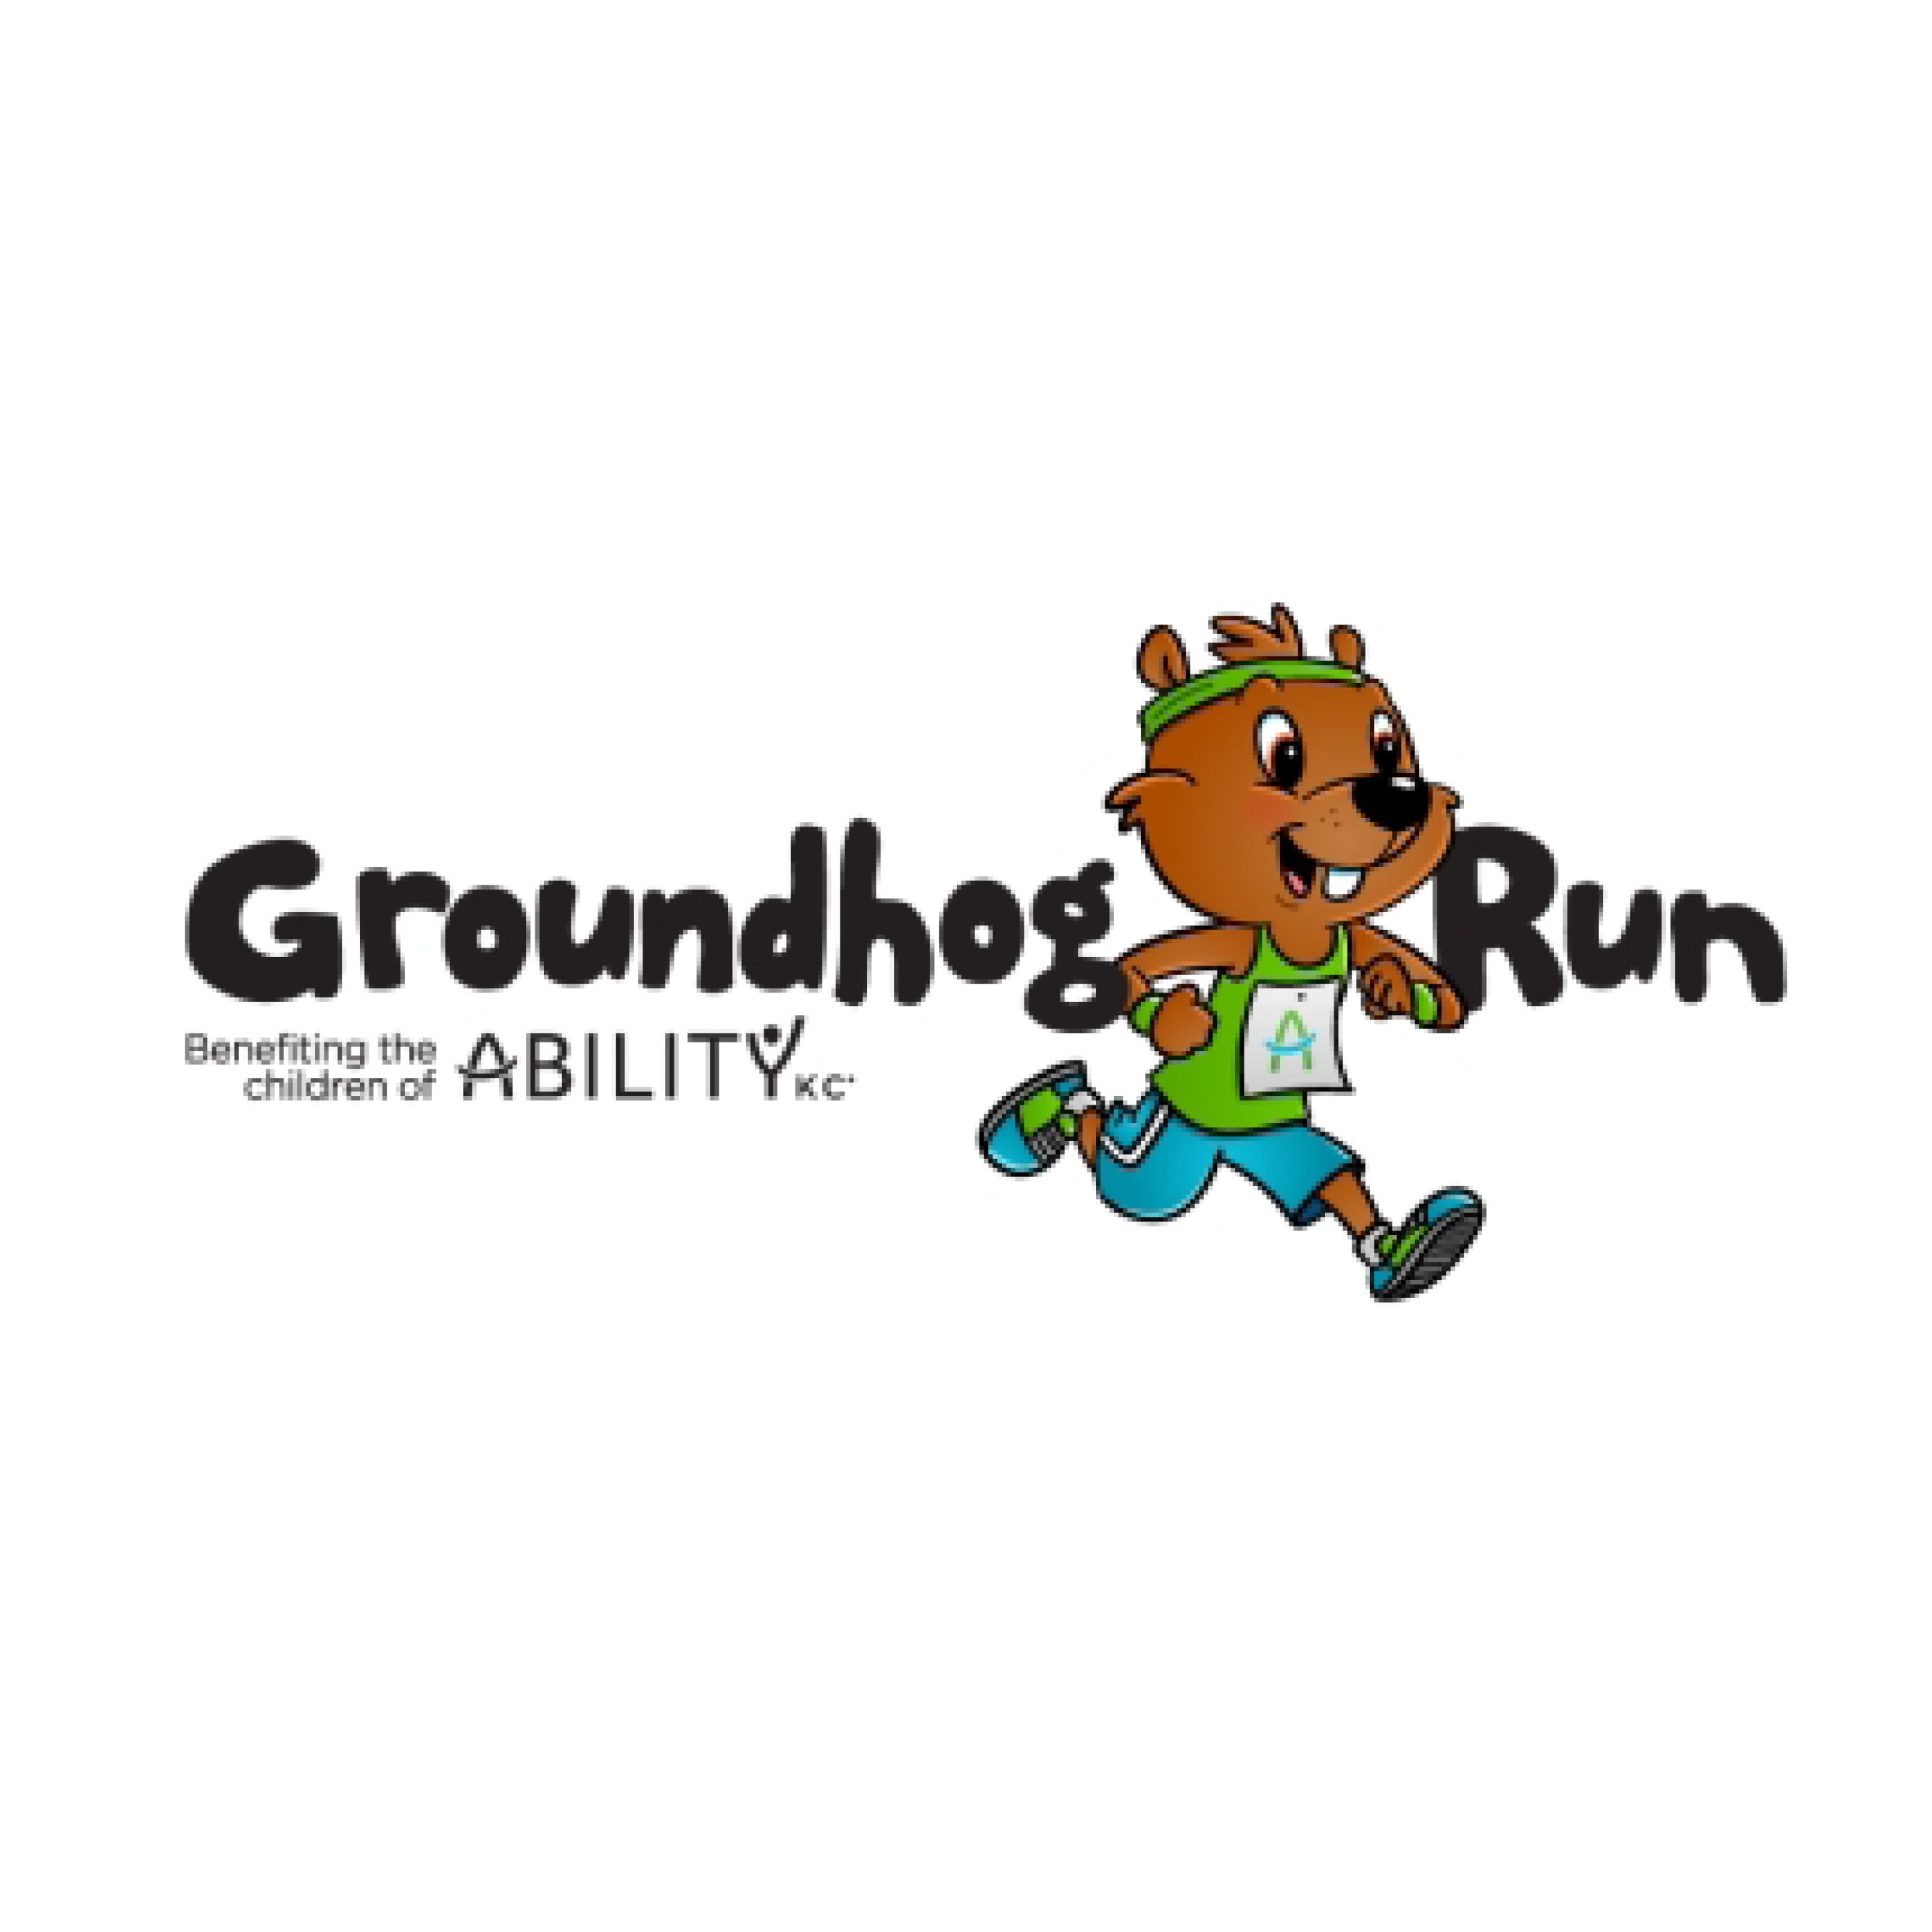 Groundhog Run